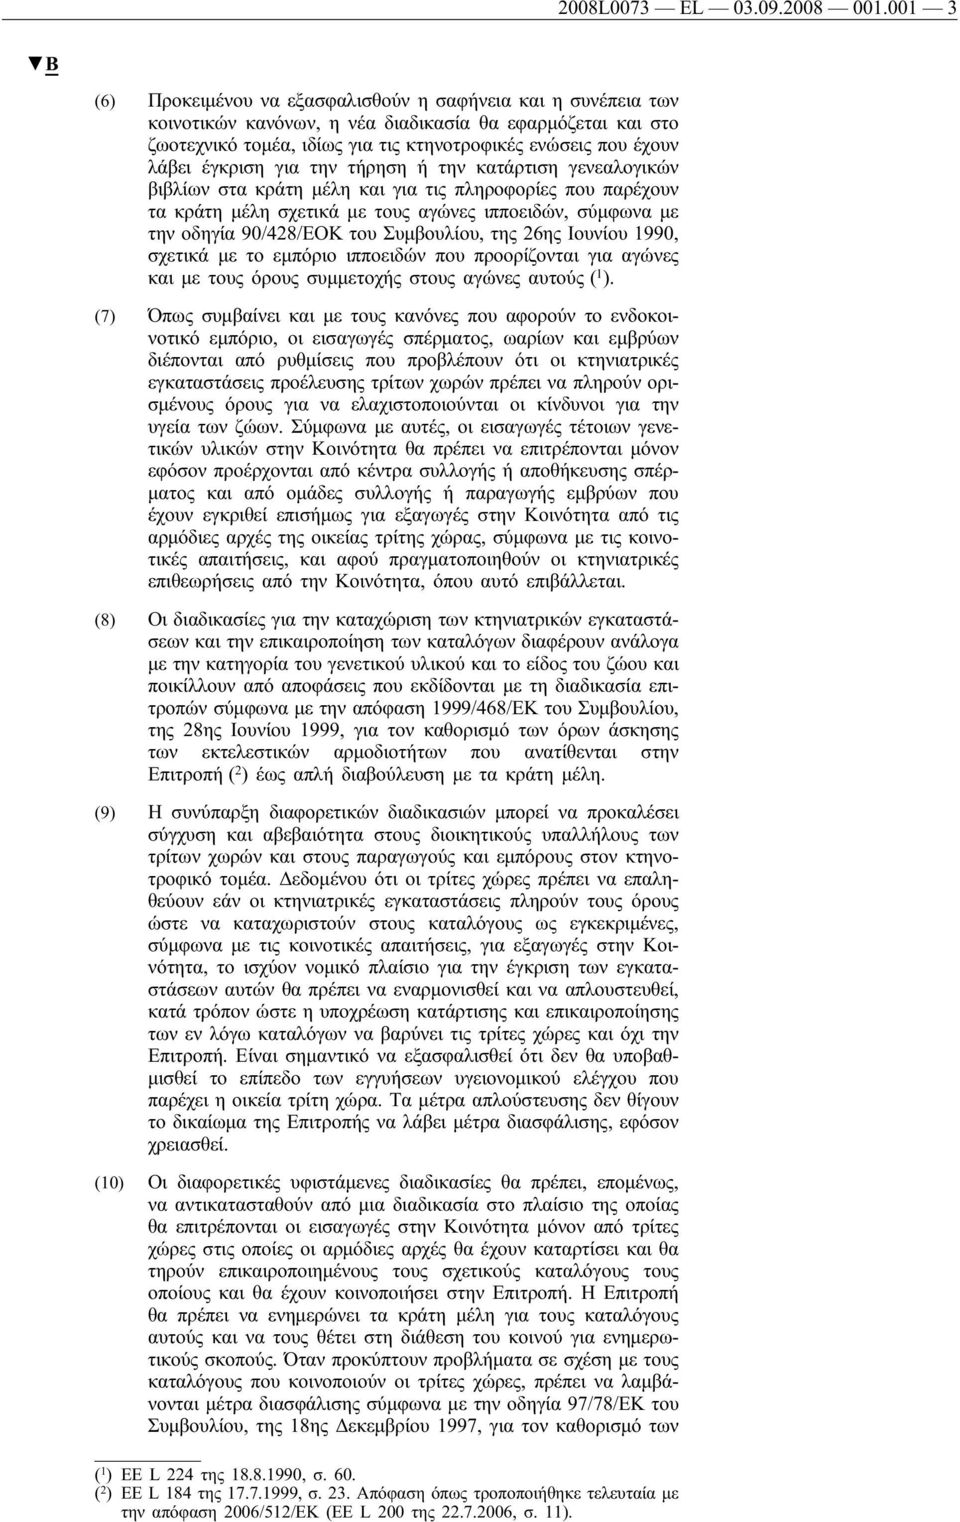 έγκριση για την τήρηση ή την κατάρτιση γενεαλογικών βιβλίων στα κράτη μέλη και για τις πληροφορίες που παρέχουν τα κράτη μέλη σχετικά με τους αγώνες ιπποειδών, σύμφωνα με την οδηγία 90/428/ΕΟΚ του